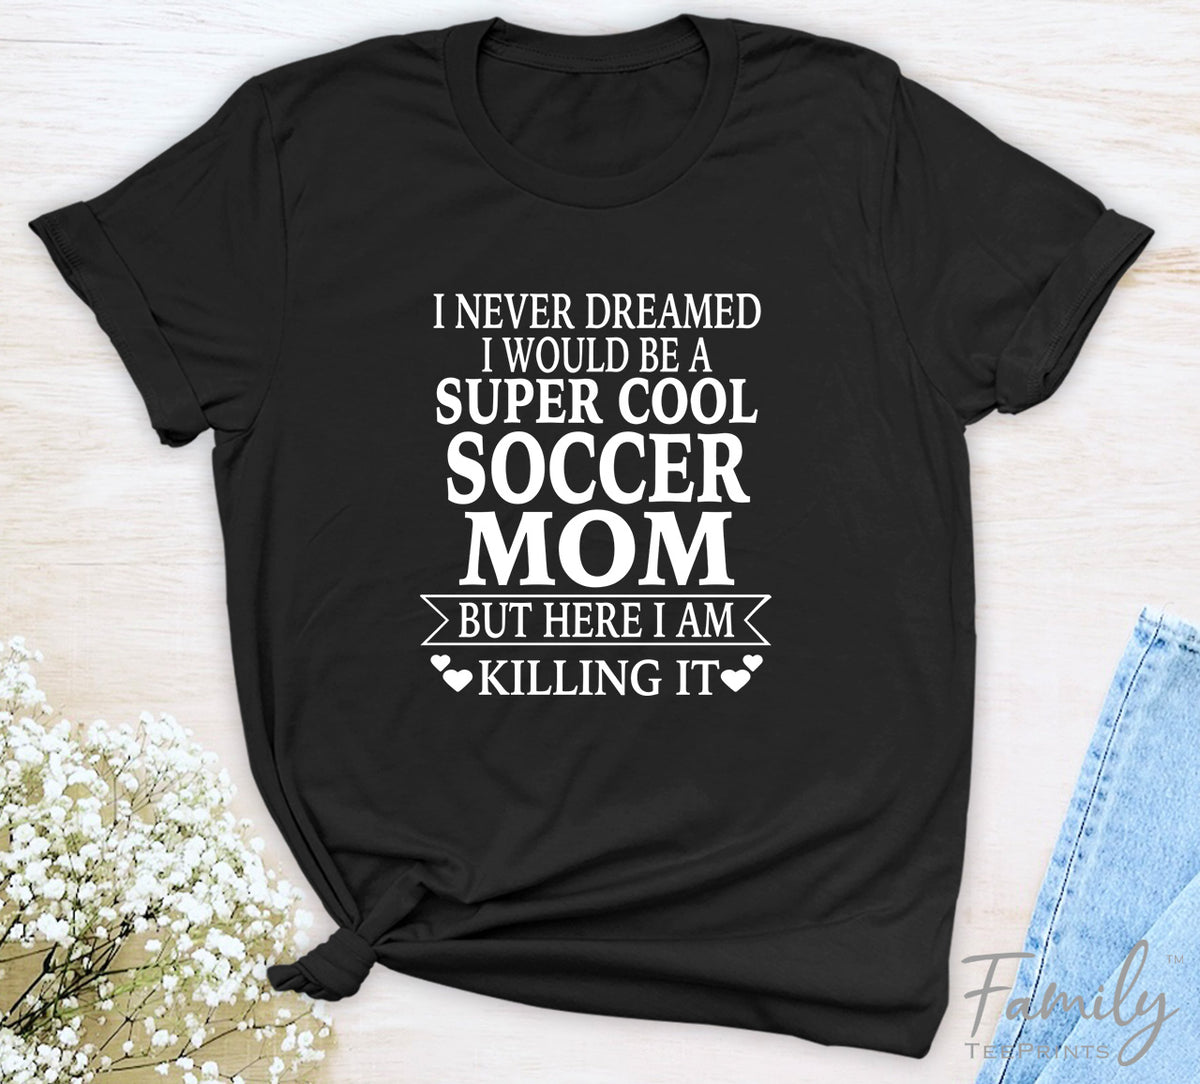 I Never Dreamed I'd Be A Super Cool Soccer Mom...- Unisex T-shirt - Soccer Mom Shirt - Gift For Soccer Mom - familyteeprints